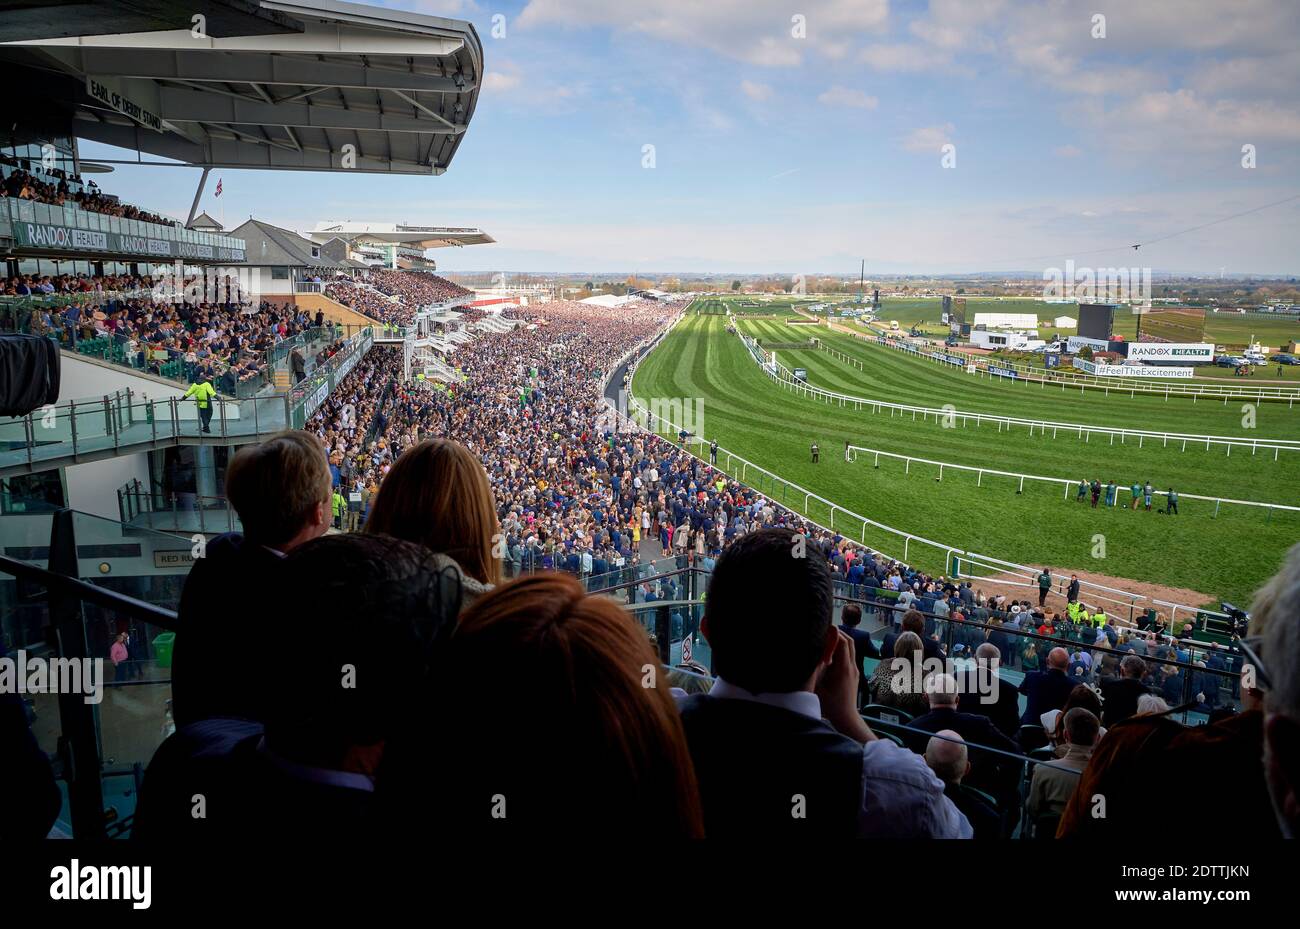 Das Grand National ist ein nationales Hunt Pferderennen, das jährlich auf der Aintree Racecourse in der Nähe von Liverpool, England, stattfindet. Stockfoto